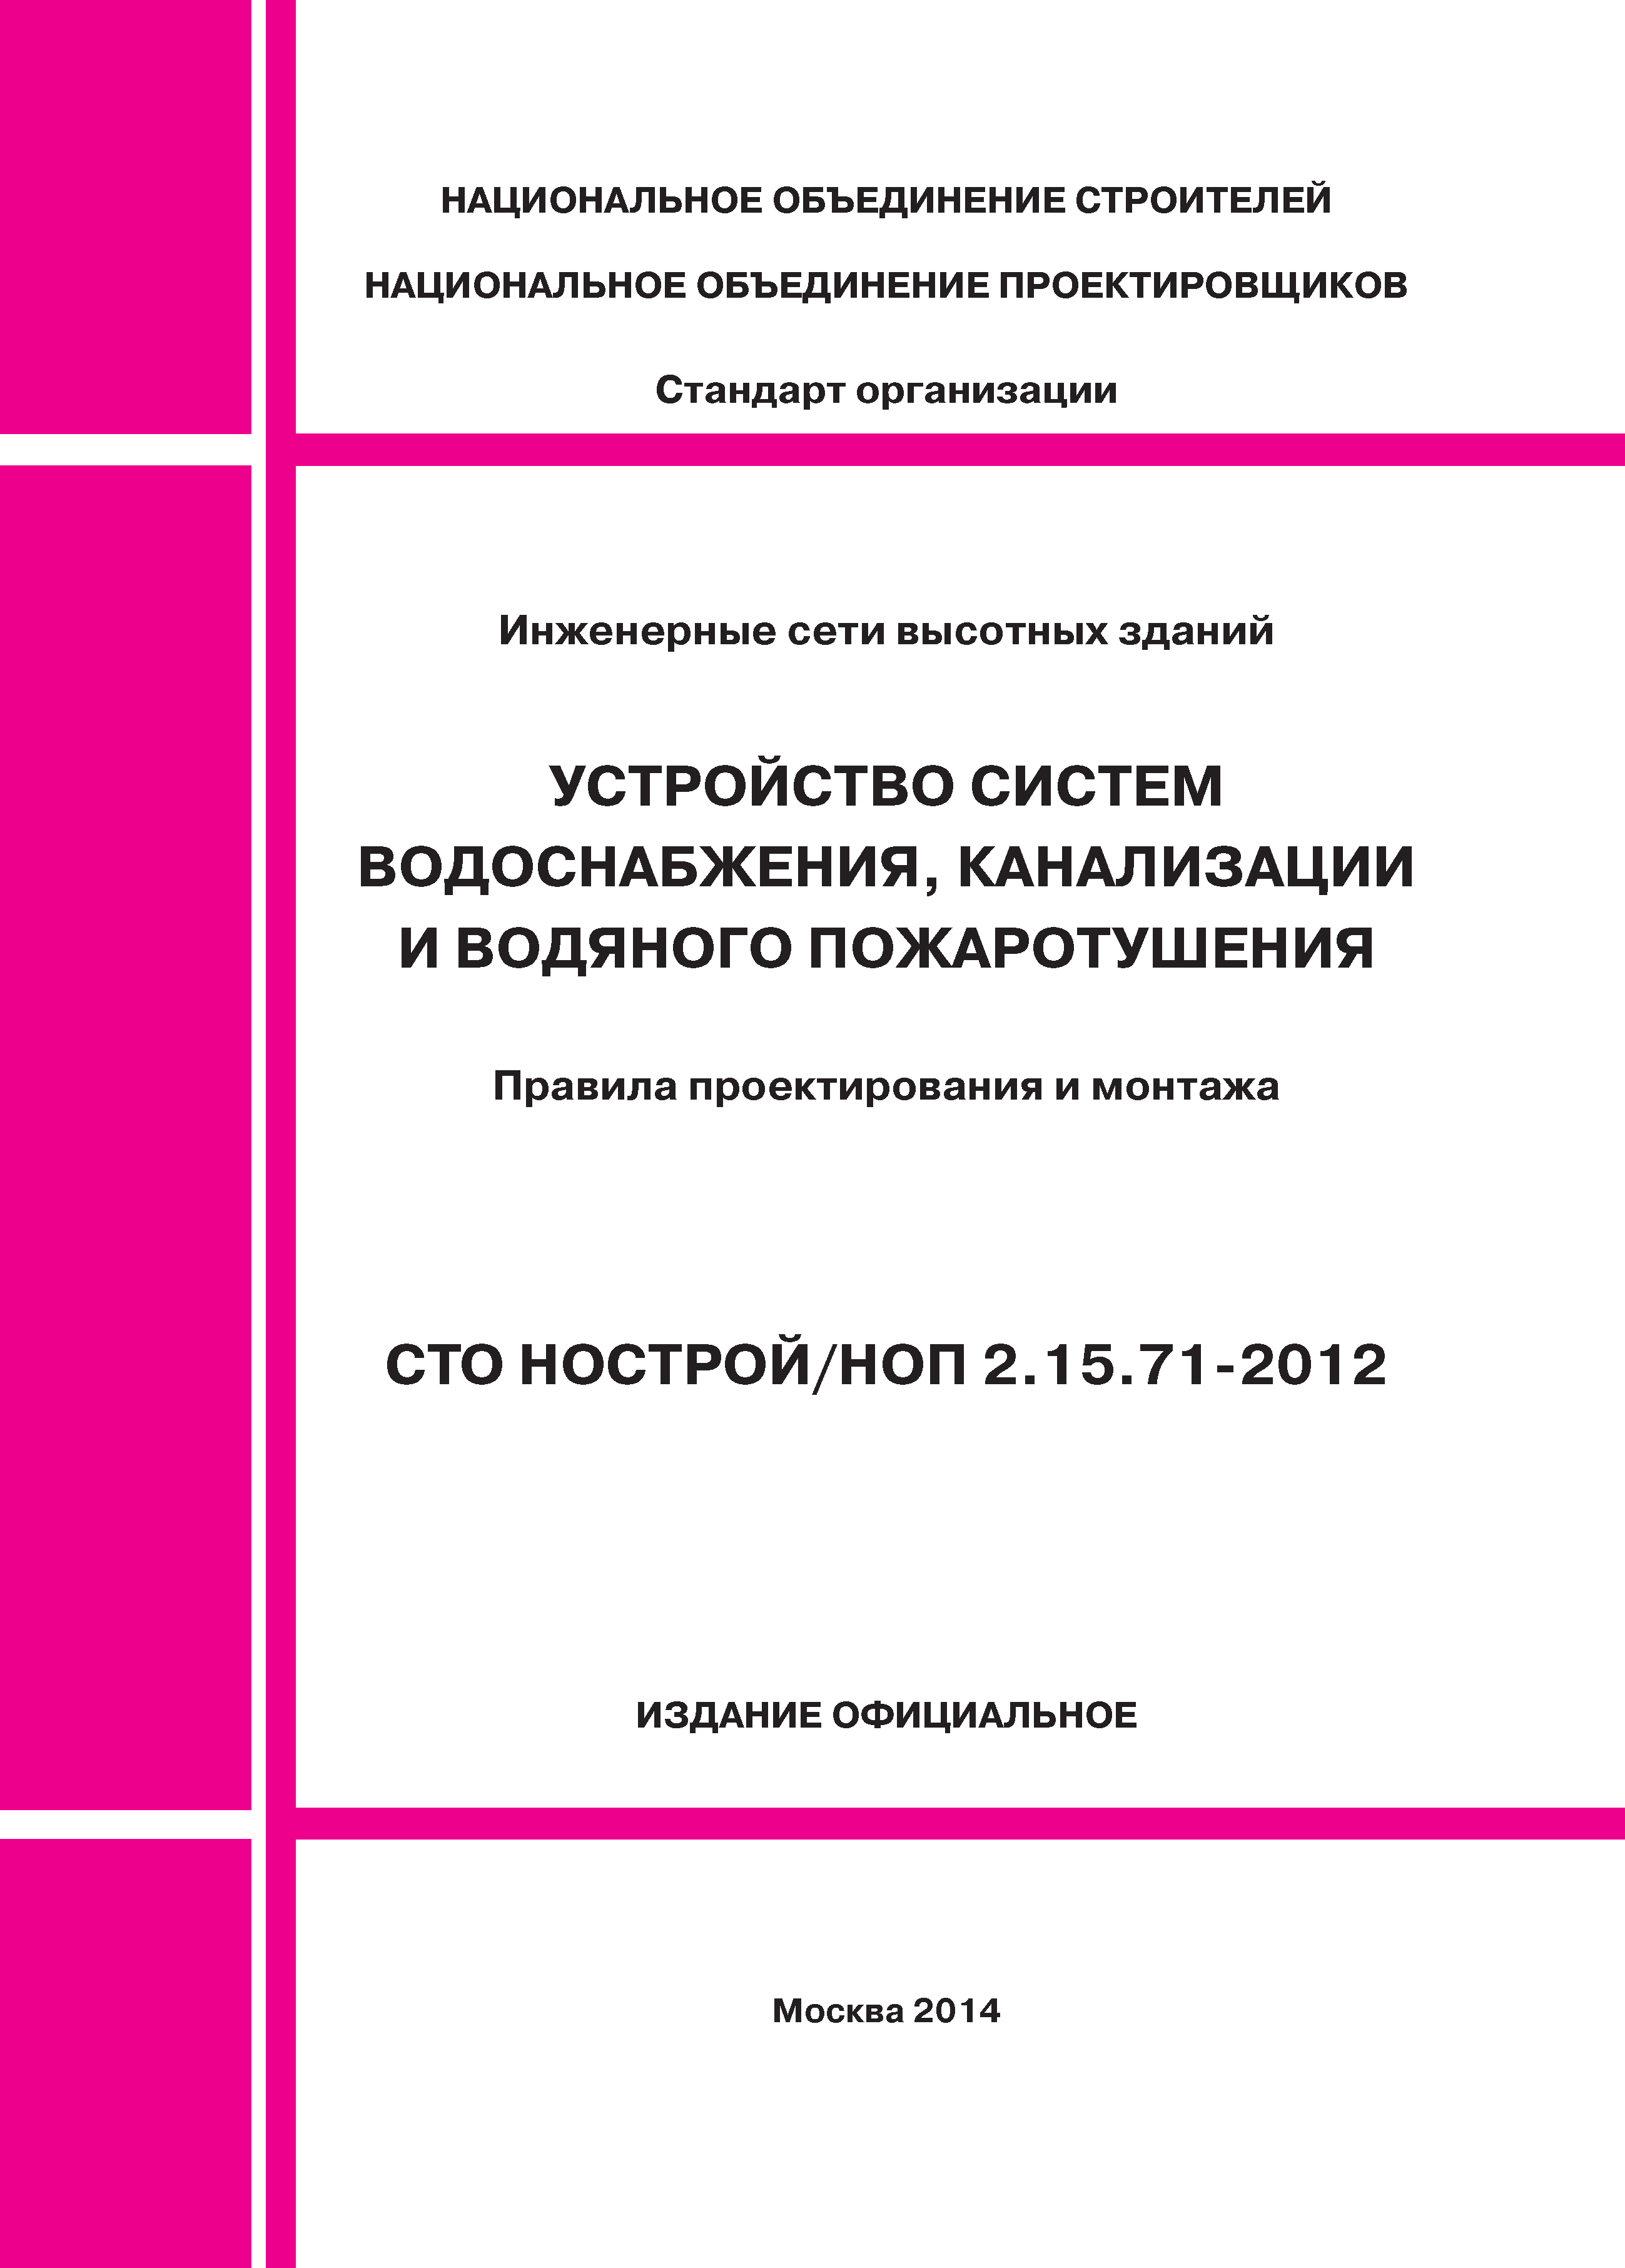 СТО НОСТРОЙ/НОП 2.15.71-2012